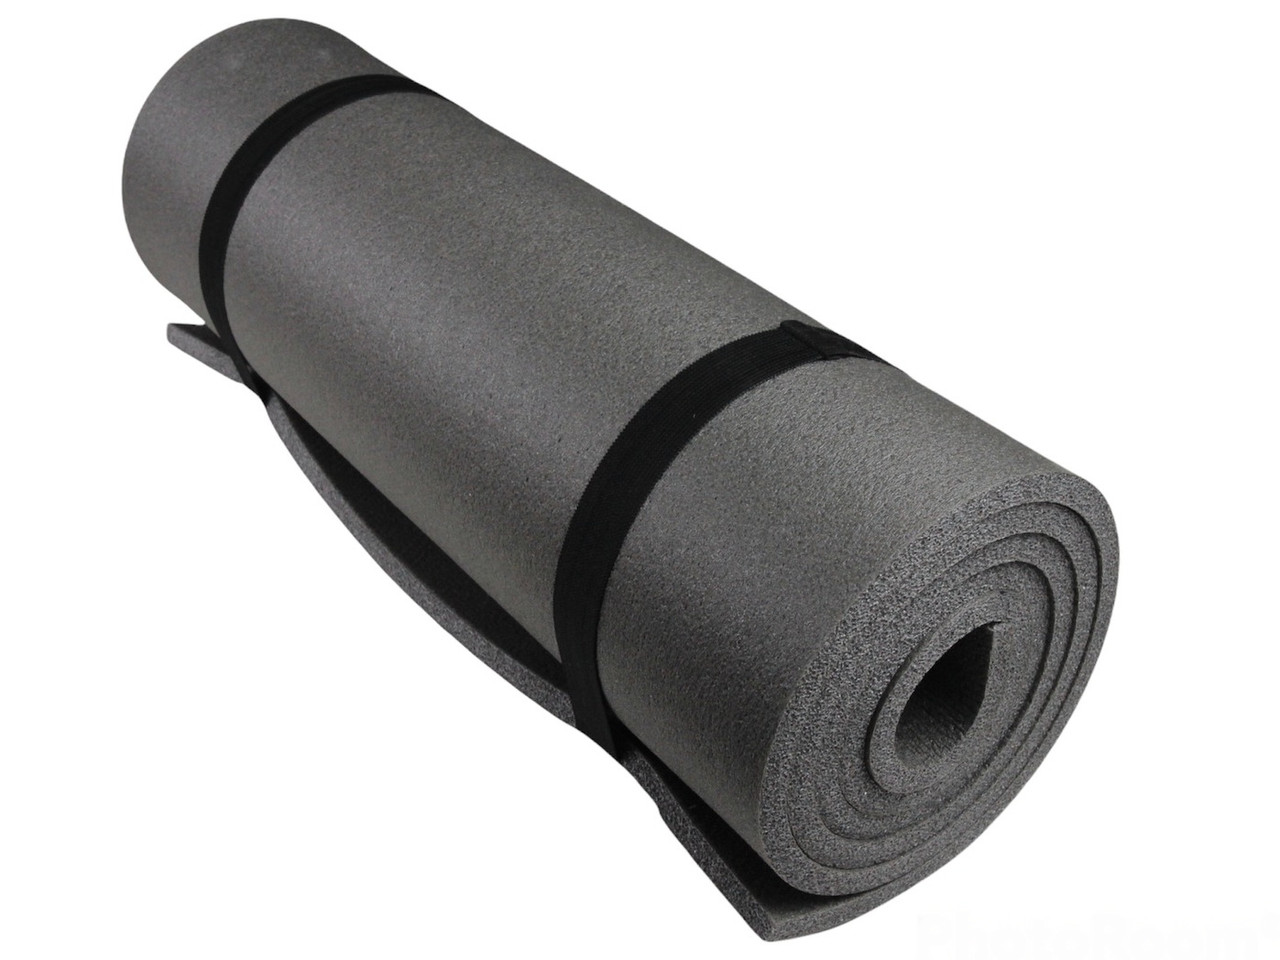 Коврик для фитнеса и йоги RELAX 10, серый, толщина 10мм, ширина 100 см детальная фотка